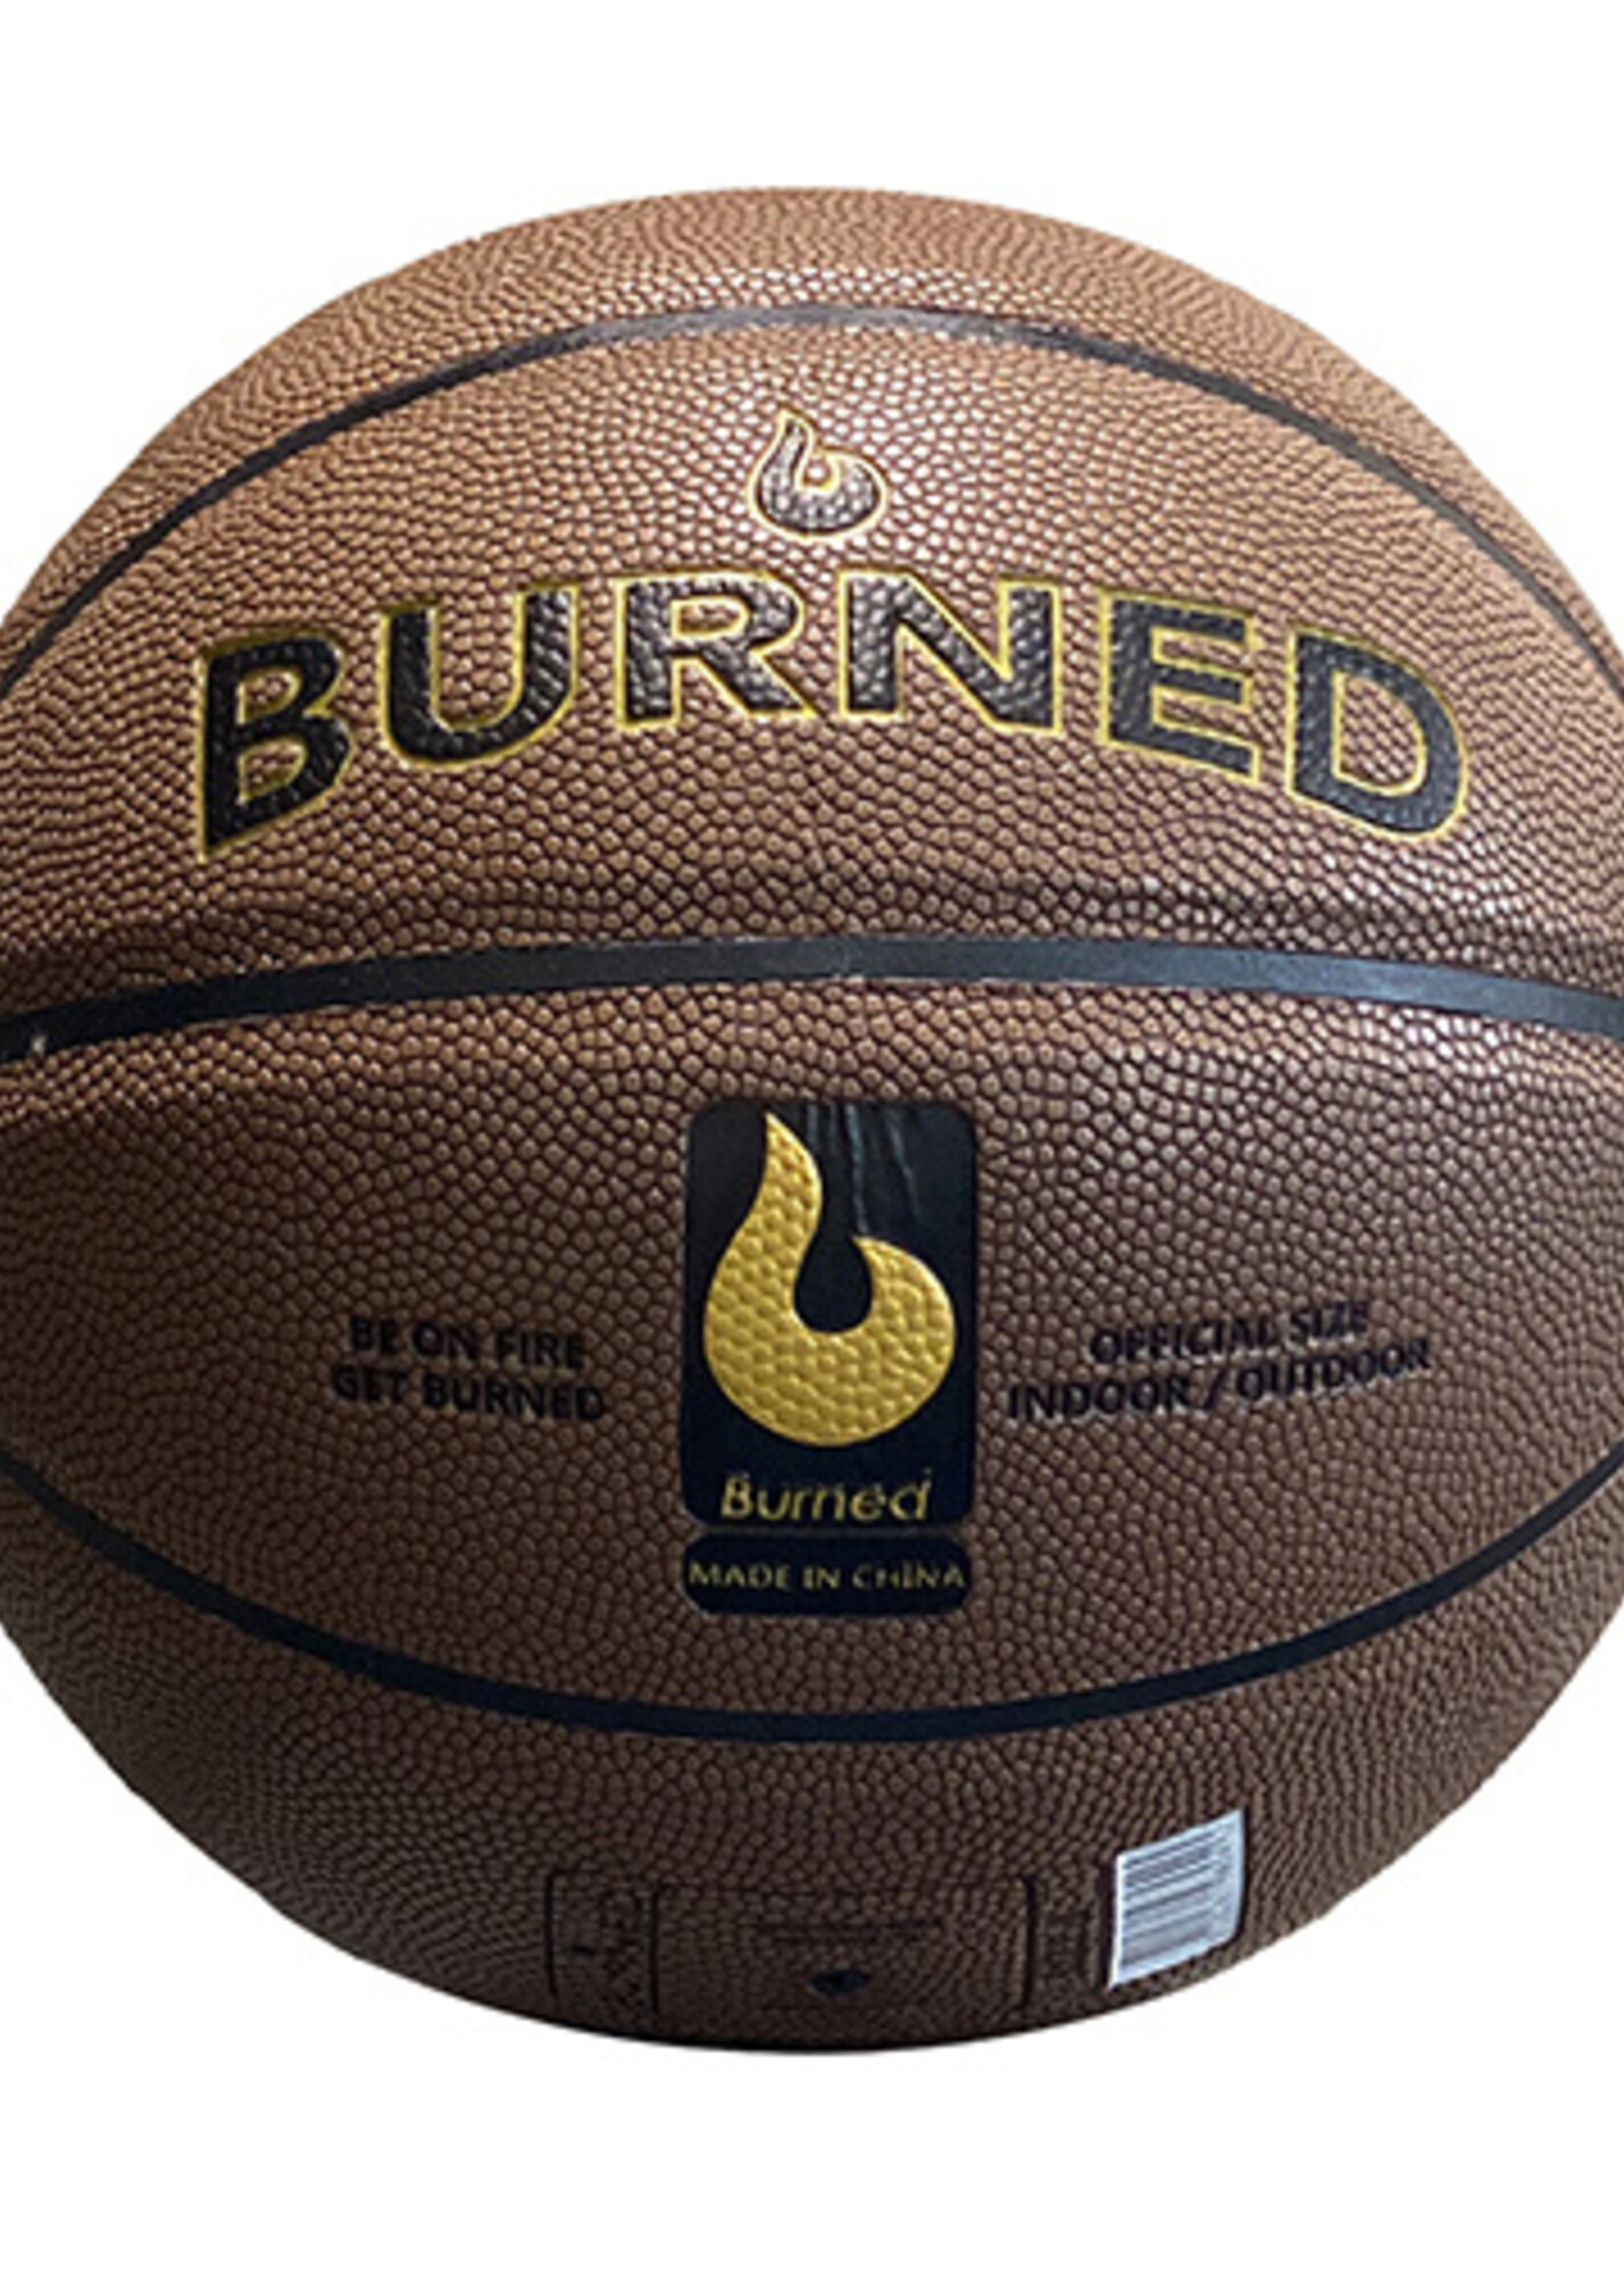 Burned Burned In/Out Basketbal Bruin (7)